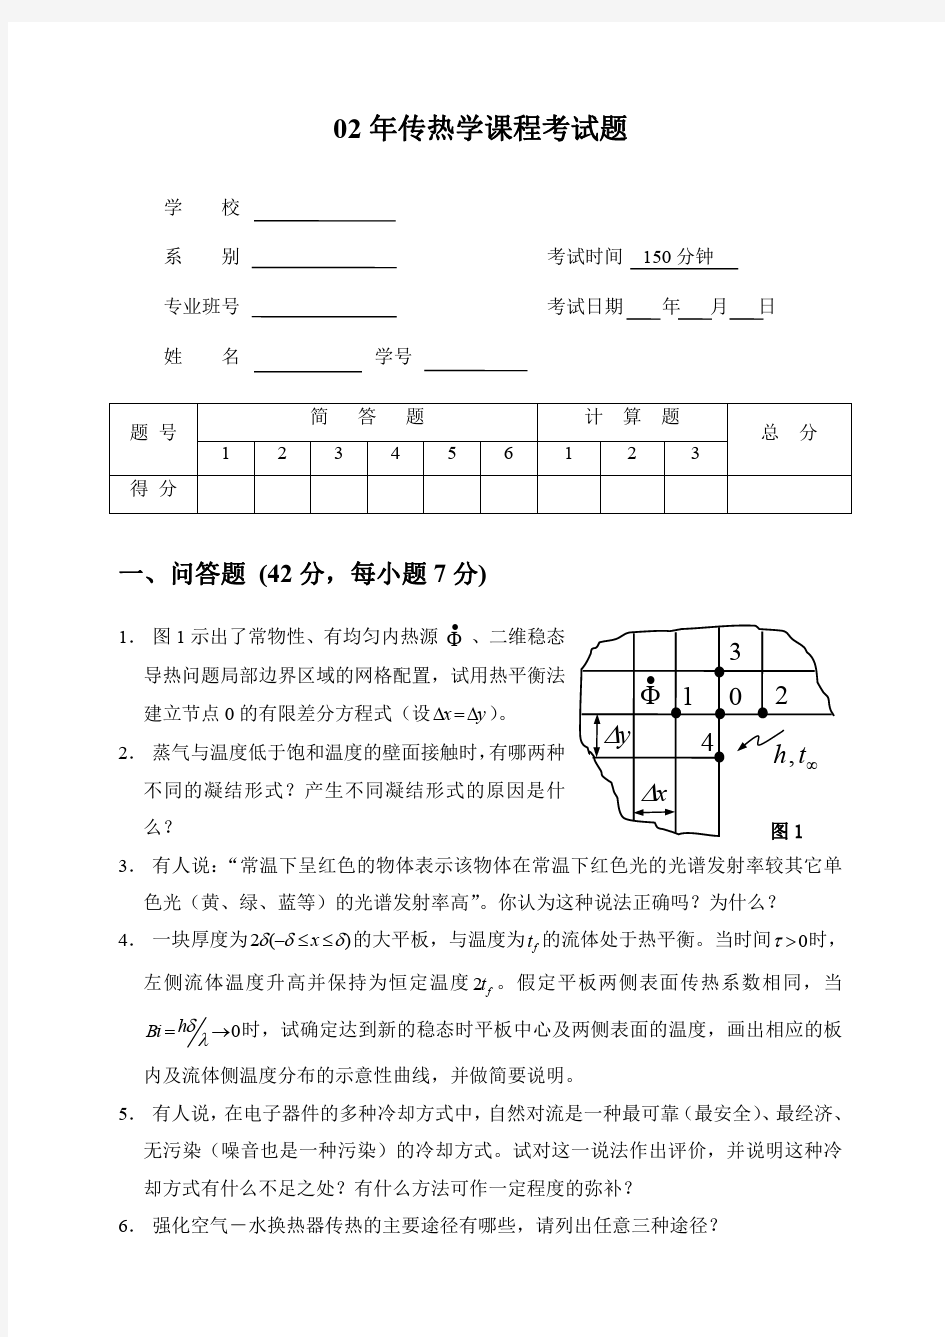 2002年上海理工大学研究生考试真题(传热学)